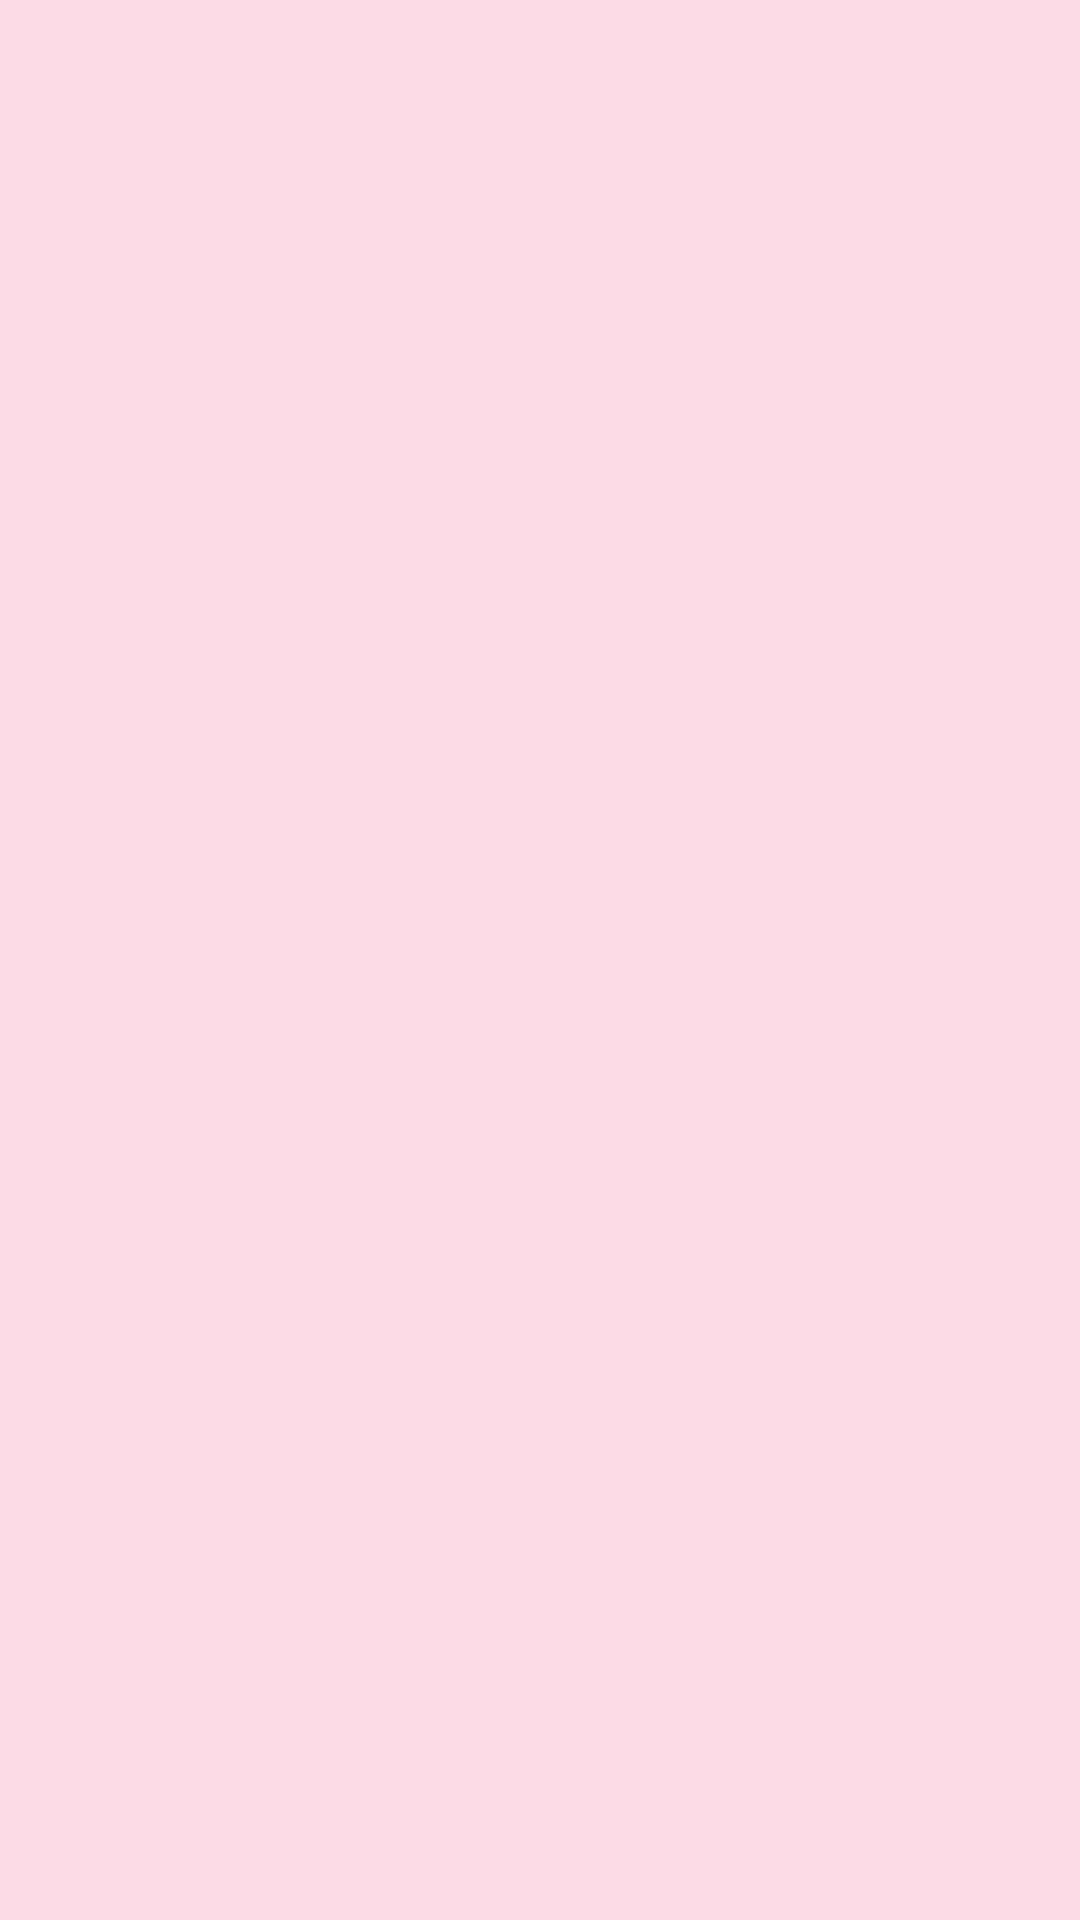 Hình nền hồng nhạt Từ màu hồng nhạt vô cùng dịu dàng, tinh tế cho đến tông màu trầm ấm, hình nền hồng nhạt sẽ đem đến cho bạn những trải nghiệm thật mới mẻ và độc đáo trong không gian làm việc của mình. Thật tuyệt vời khi được khoác lên mình sắc màu yêu thích và cảm nhận được sự nhẹ nhàng, dịu dàng của hình nền hồng nhạt.